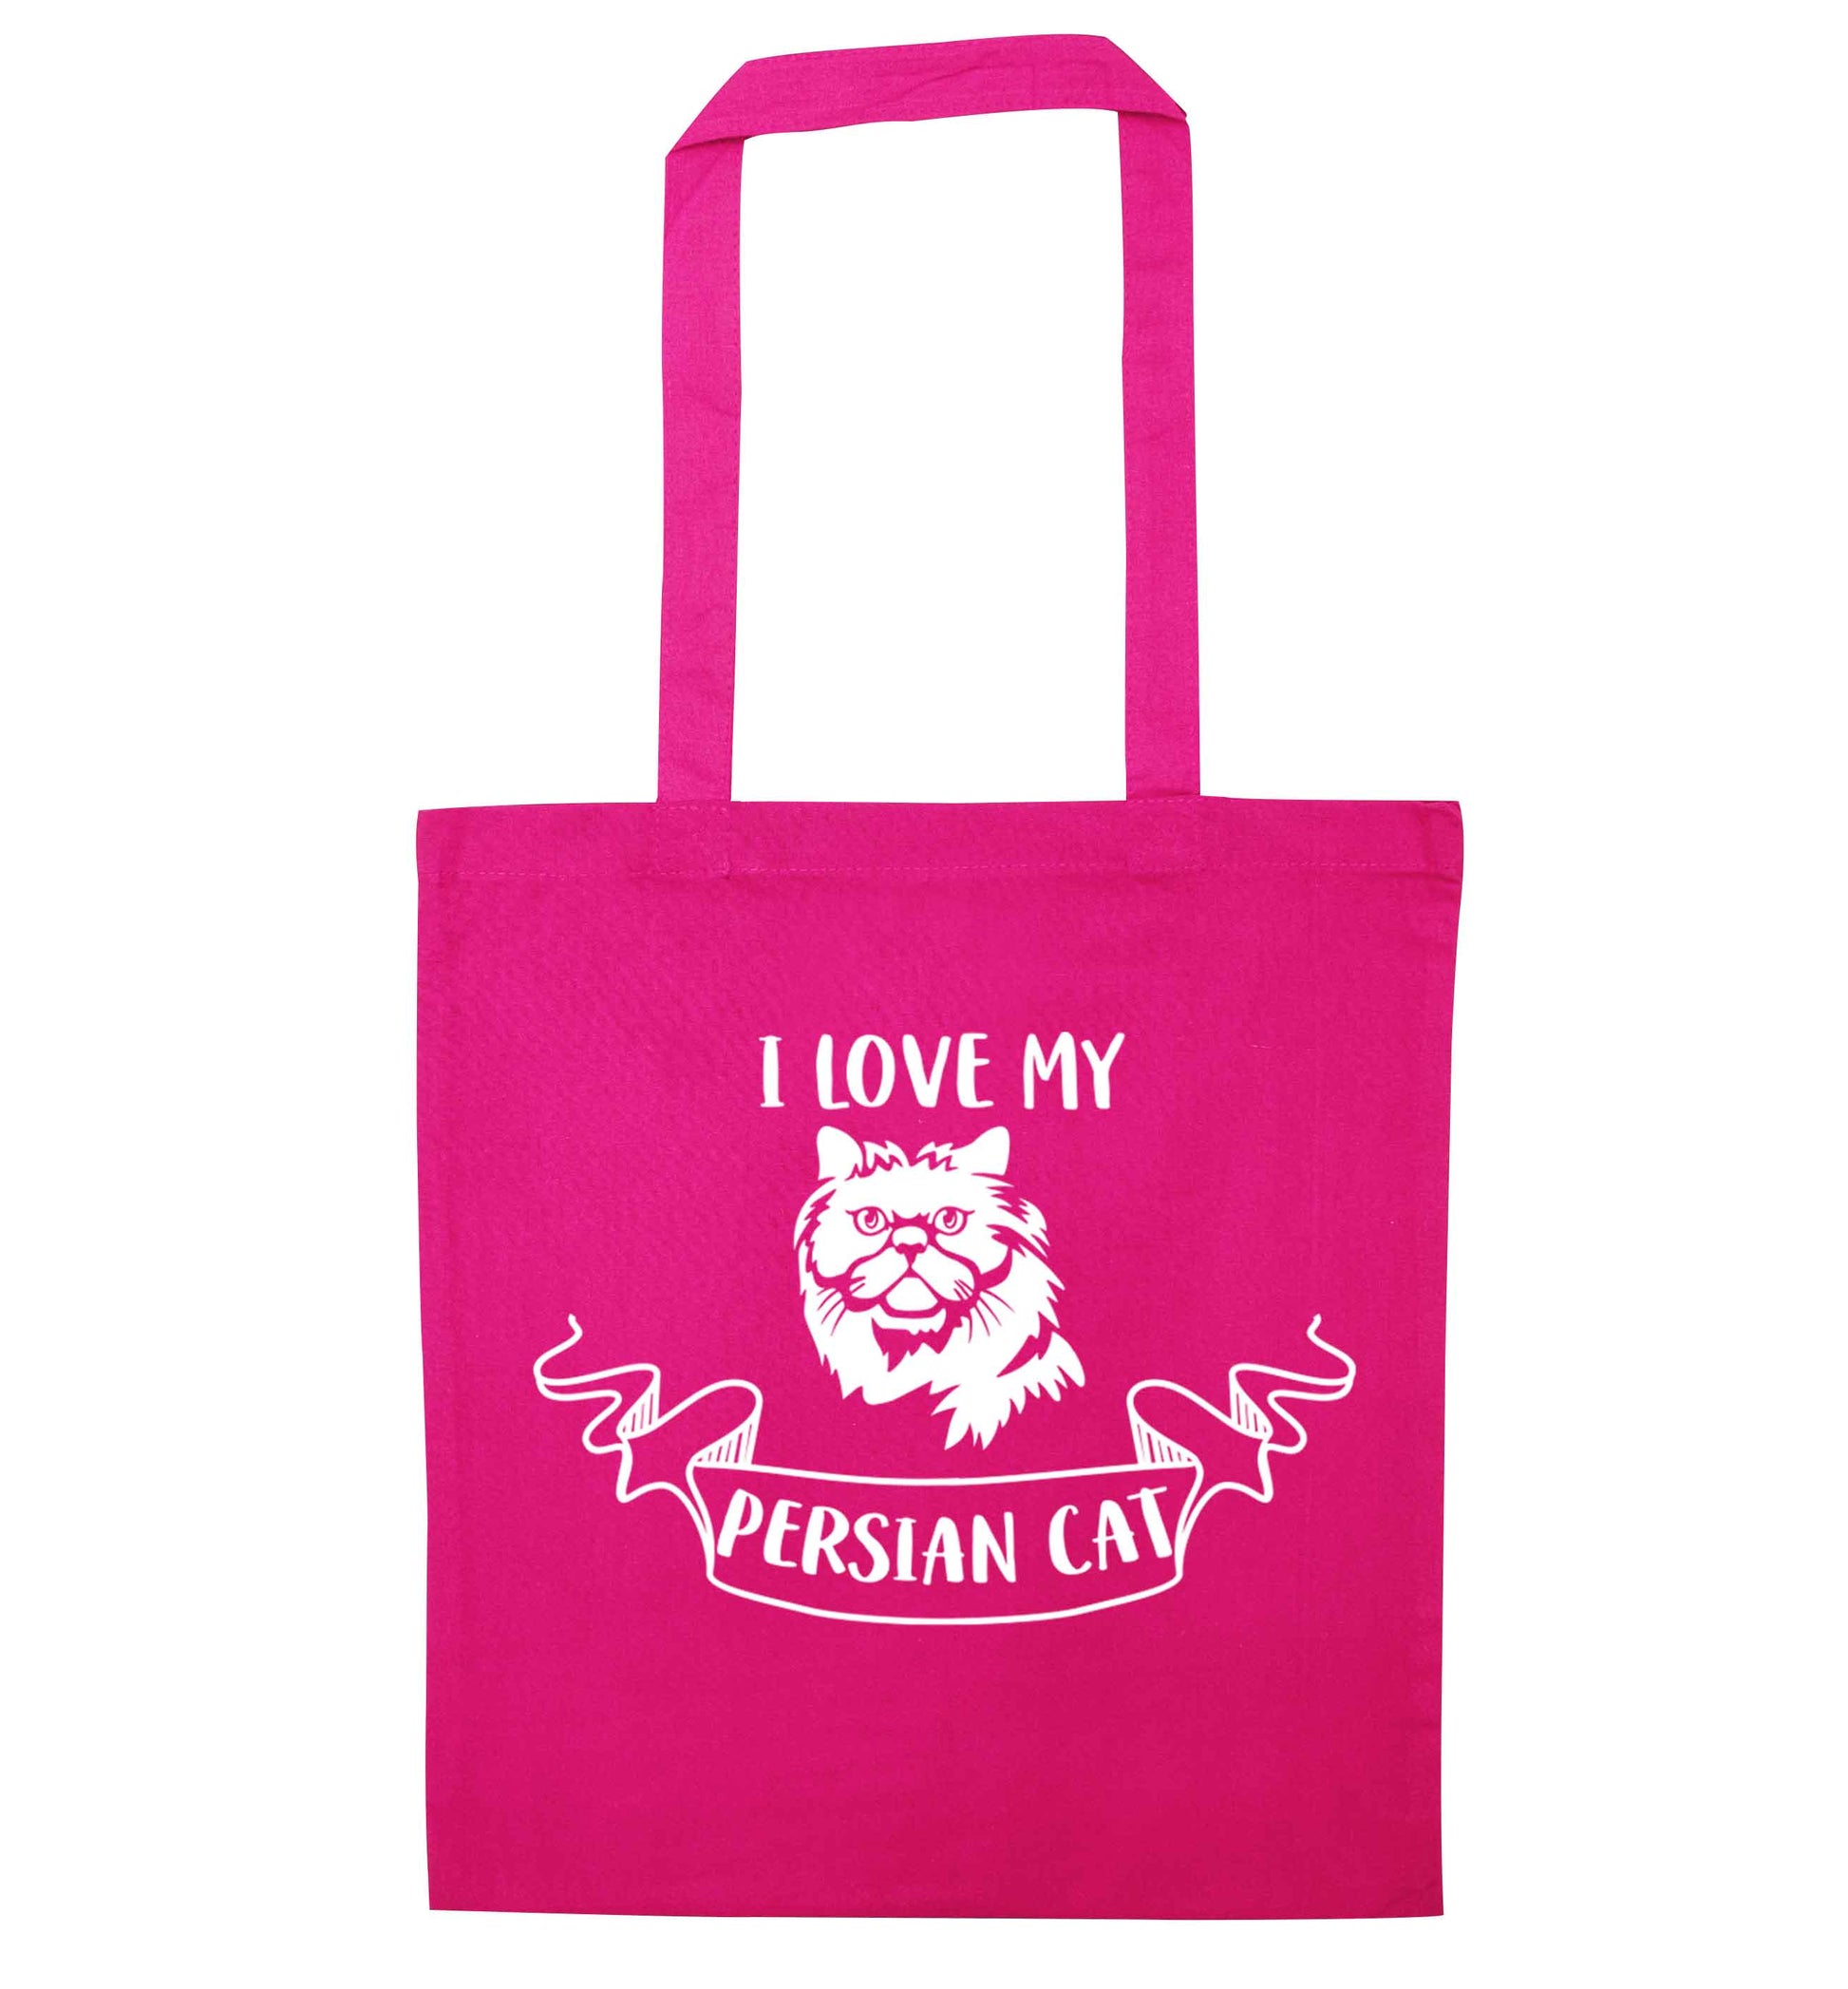 I love my persian cat pink tote bag